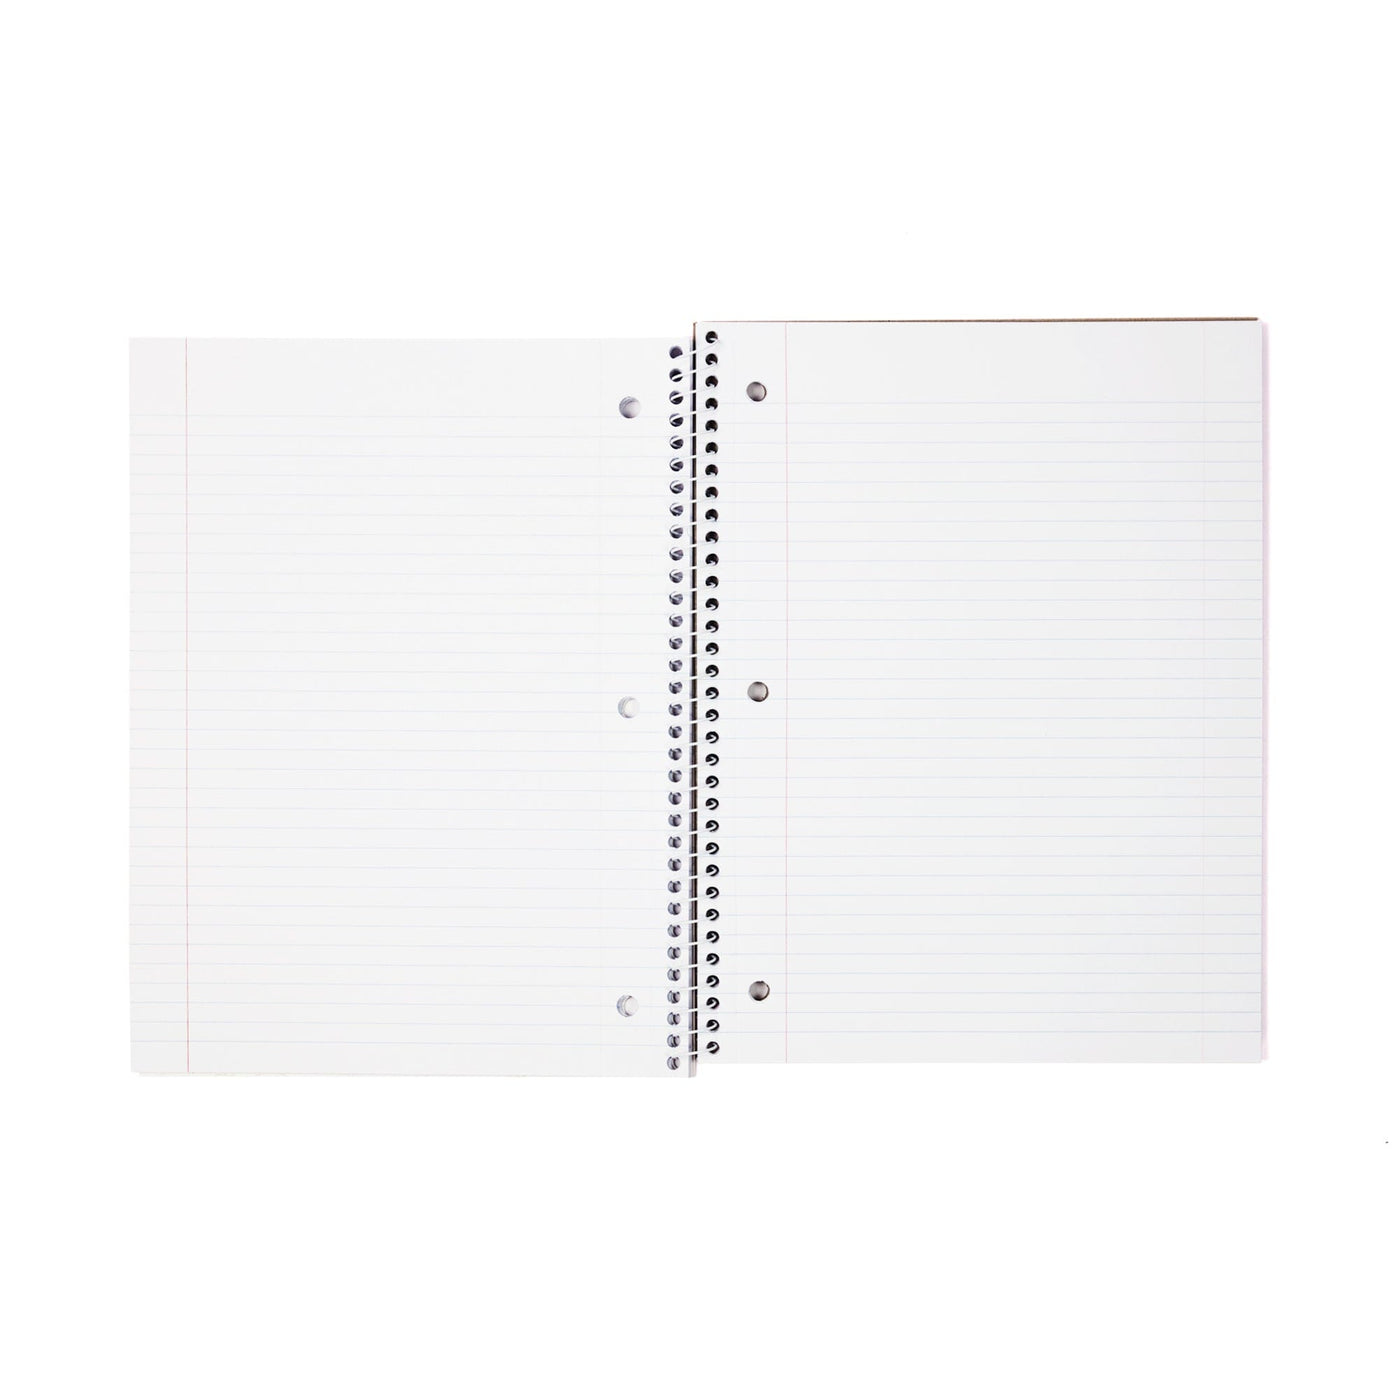 Yoobi 1 Subject College Ruled Notebooks